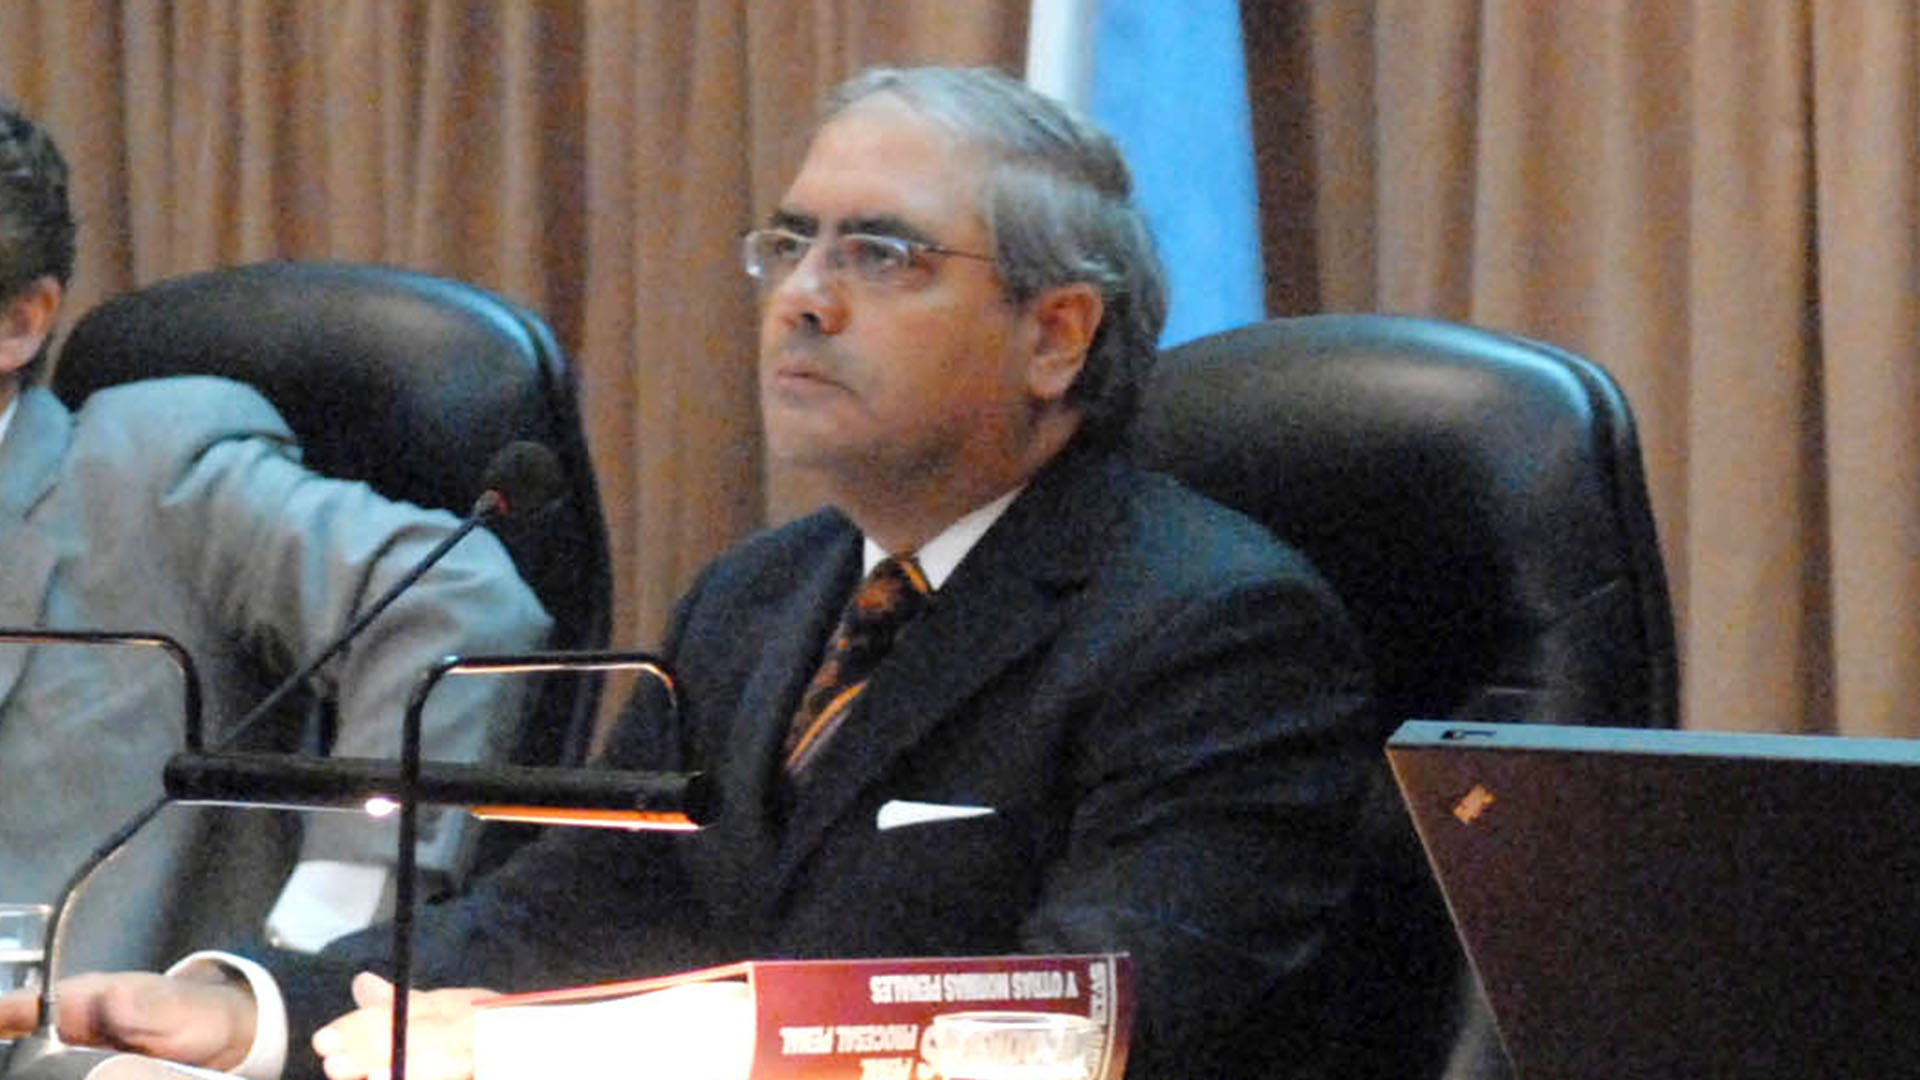 Uno de los jueces que sobreseyó a Cristina Kirchner fue “bochado” en la Facultad de Derecho y perdió su cargo como profesor